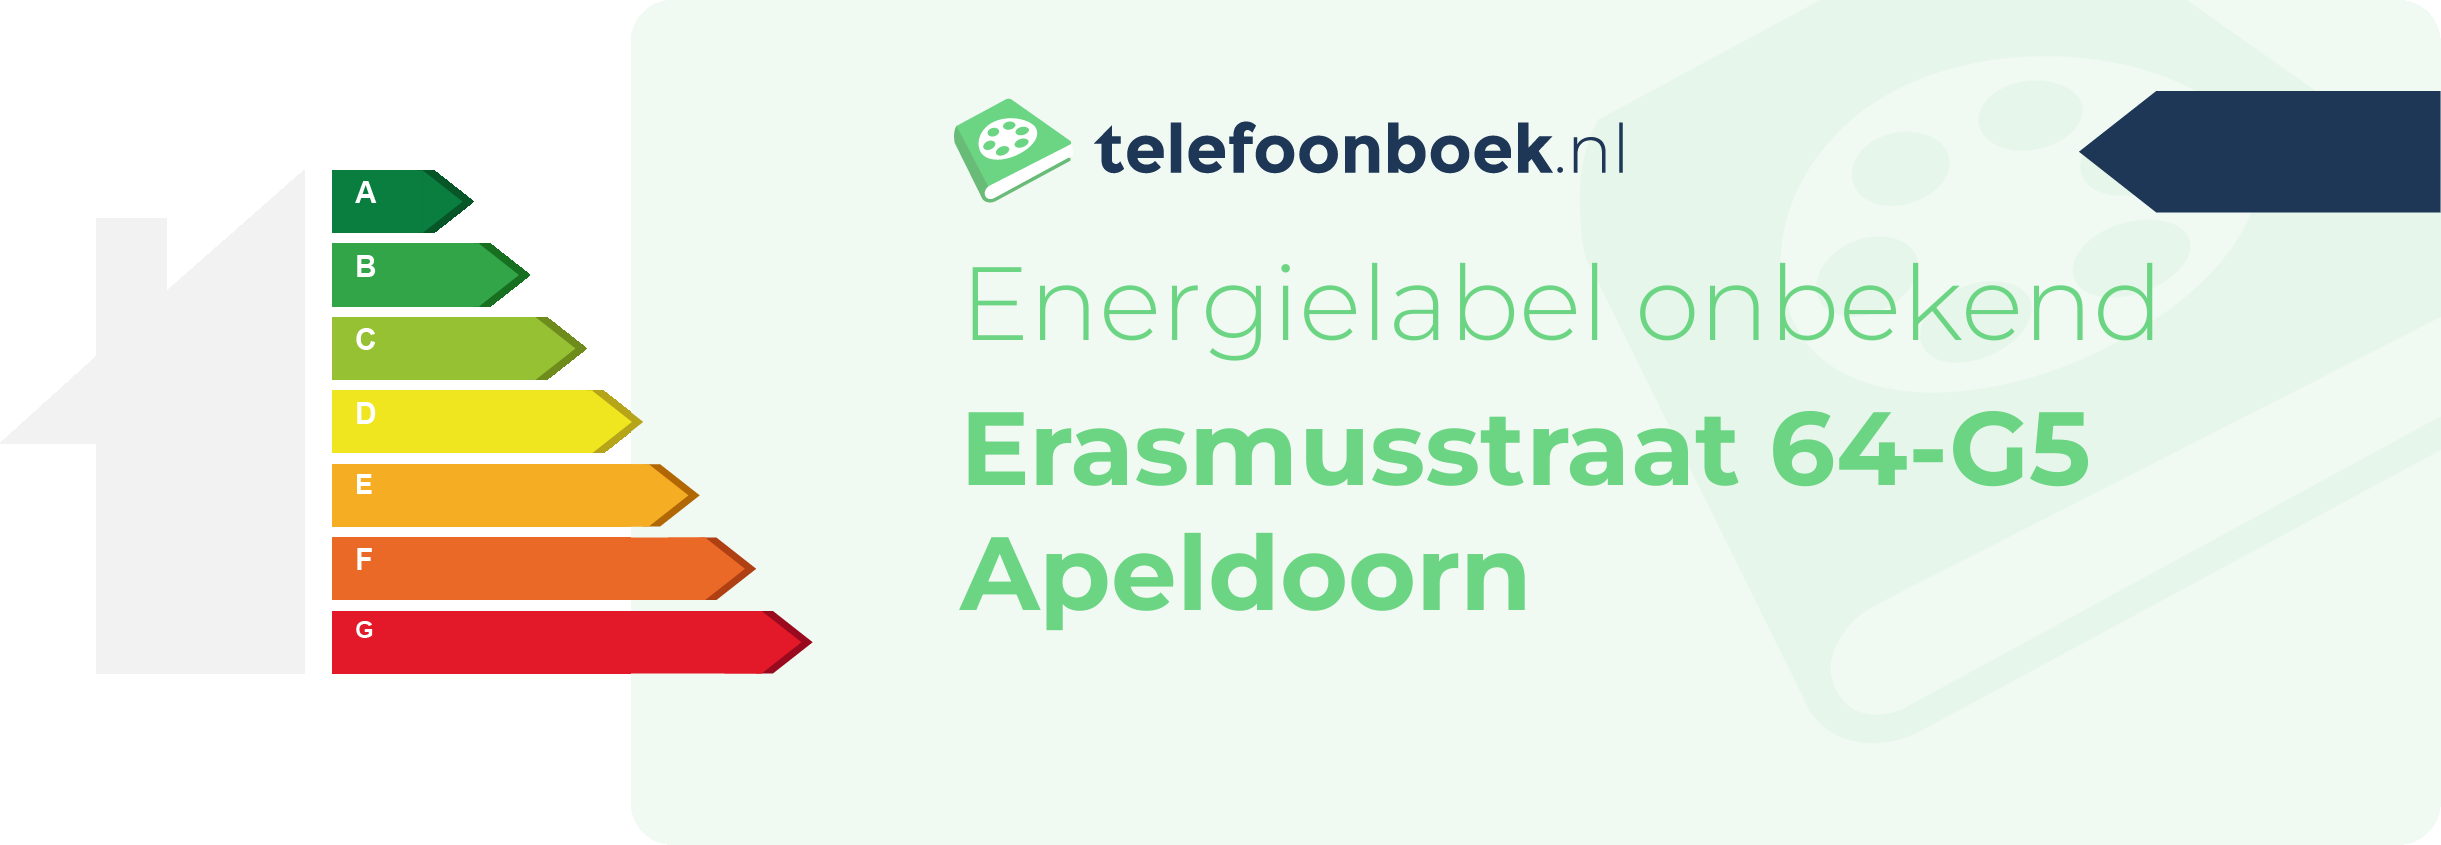 Energielabel Erasmusstraat 64-G5 Apeldoorn